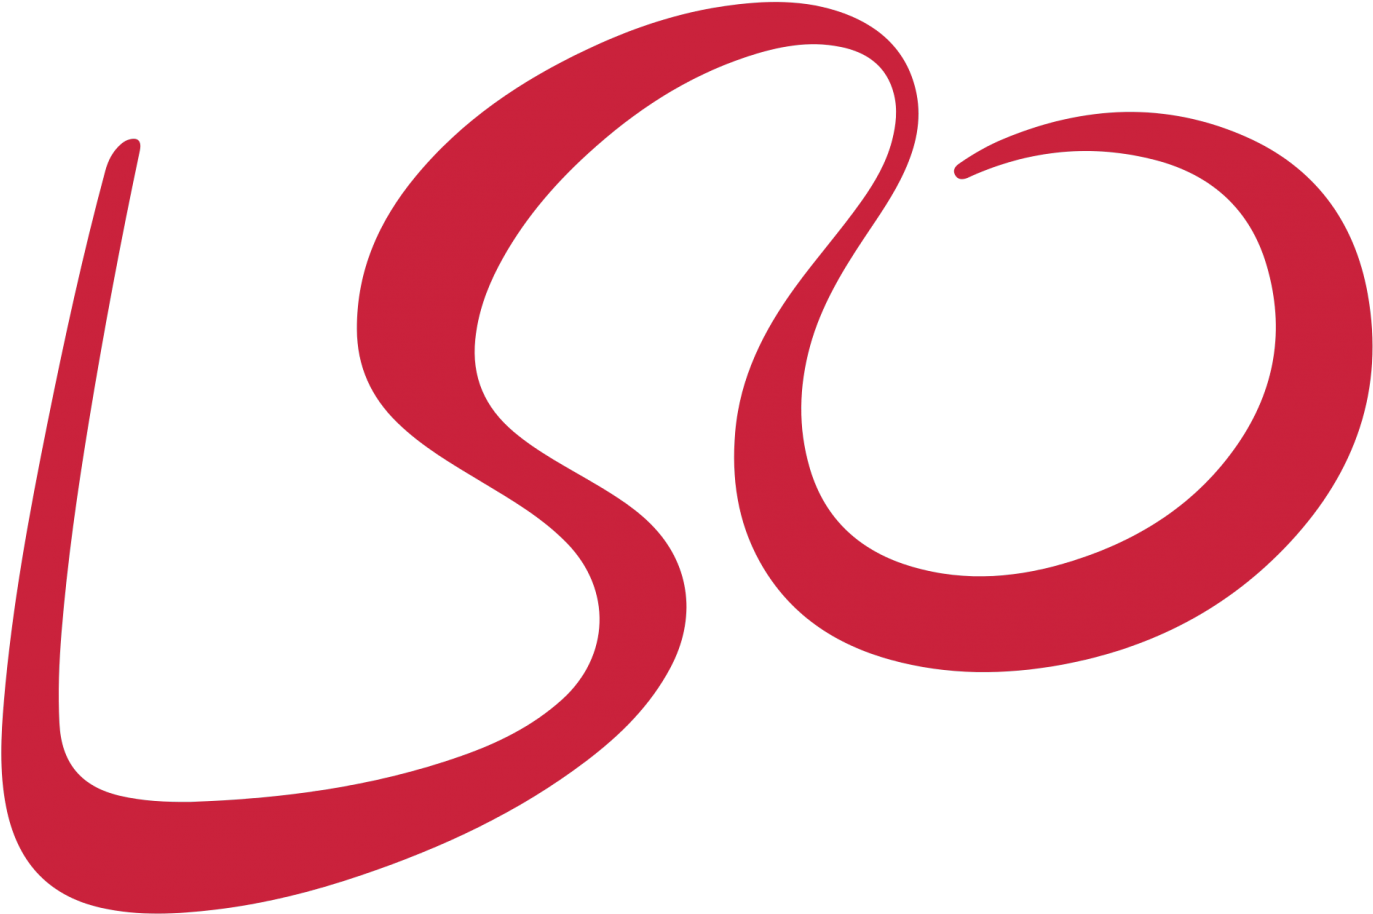 London Symphony Orchestra - Lso Logo (1456x968)